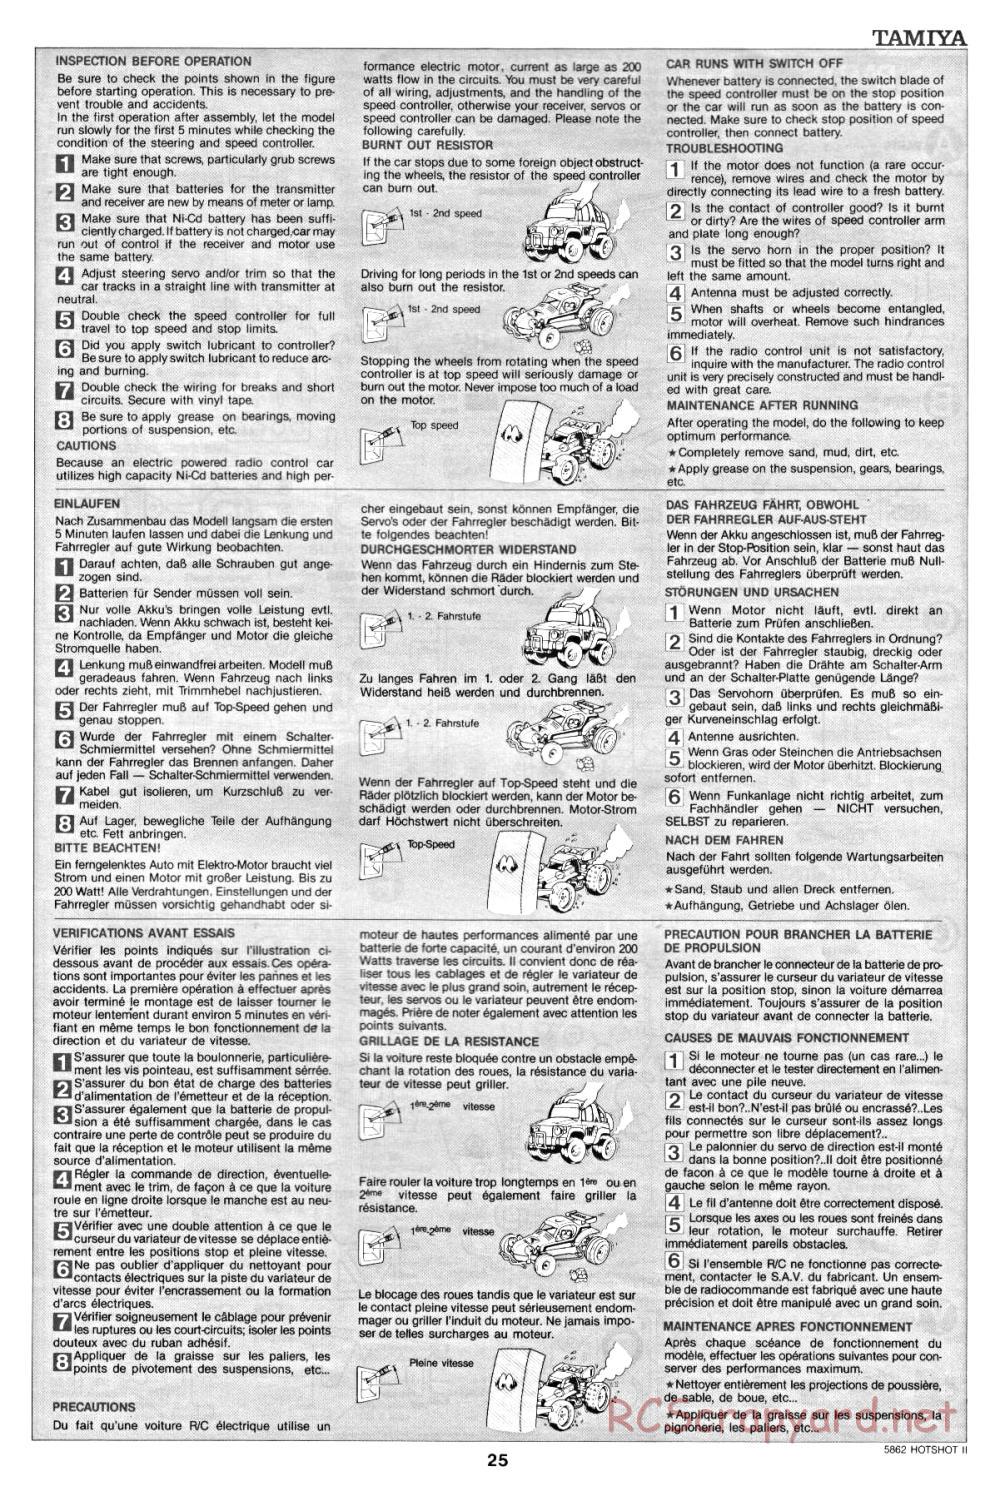 Tamiya - Hot-Shot II - 58062 - Manual - Page 25